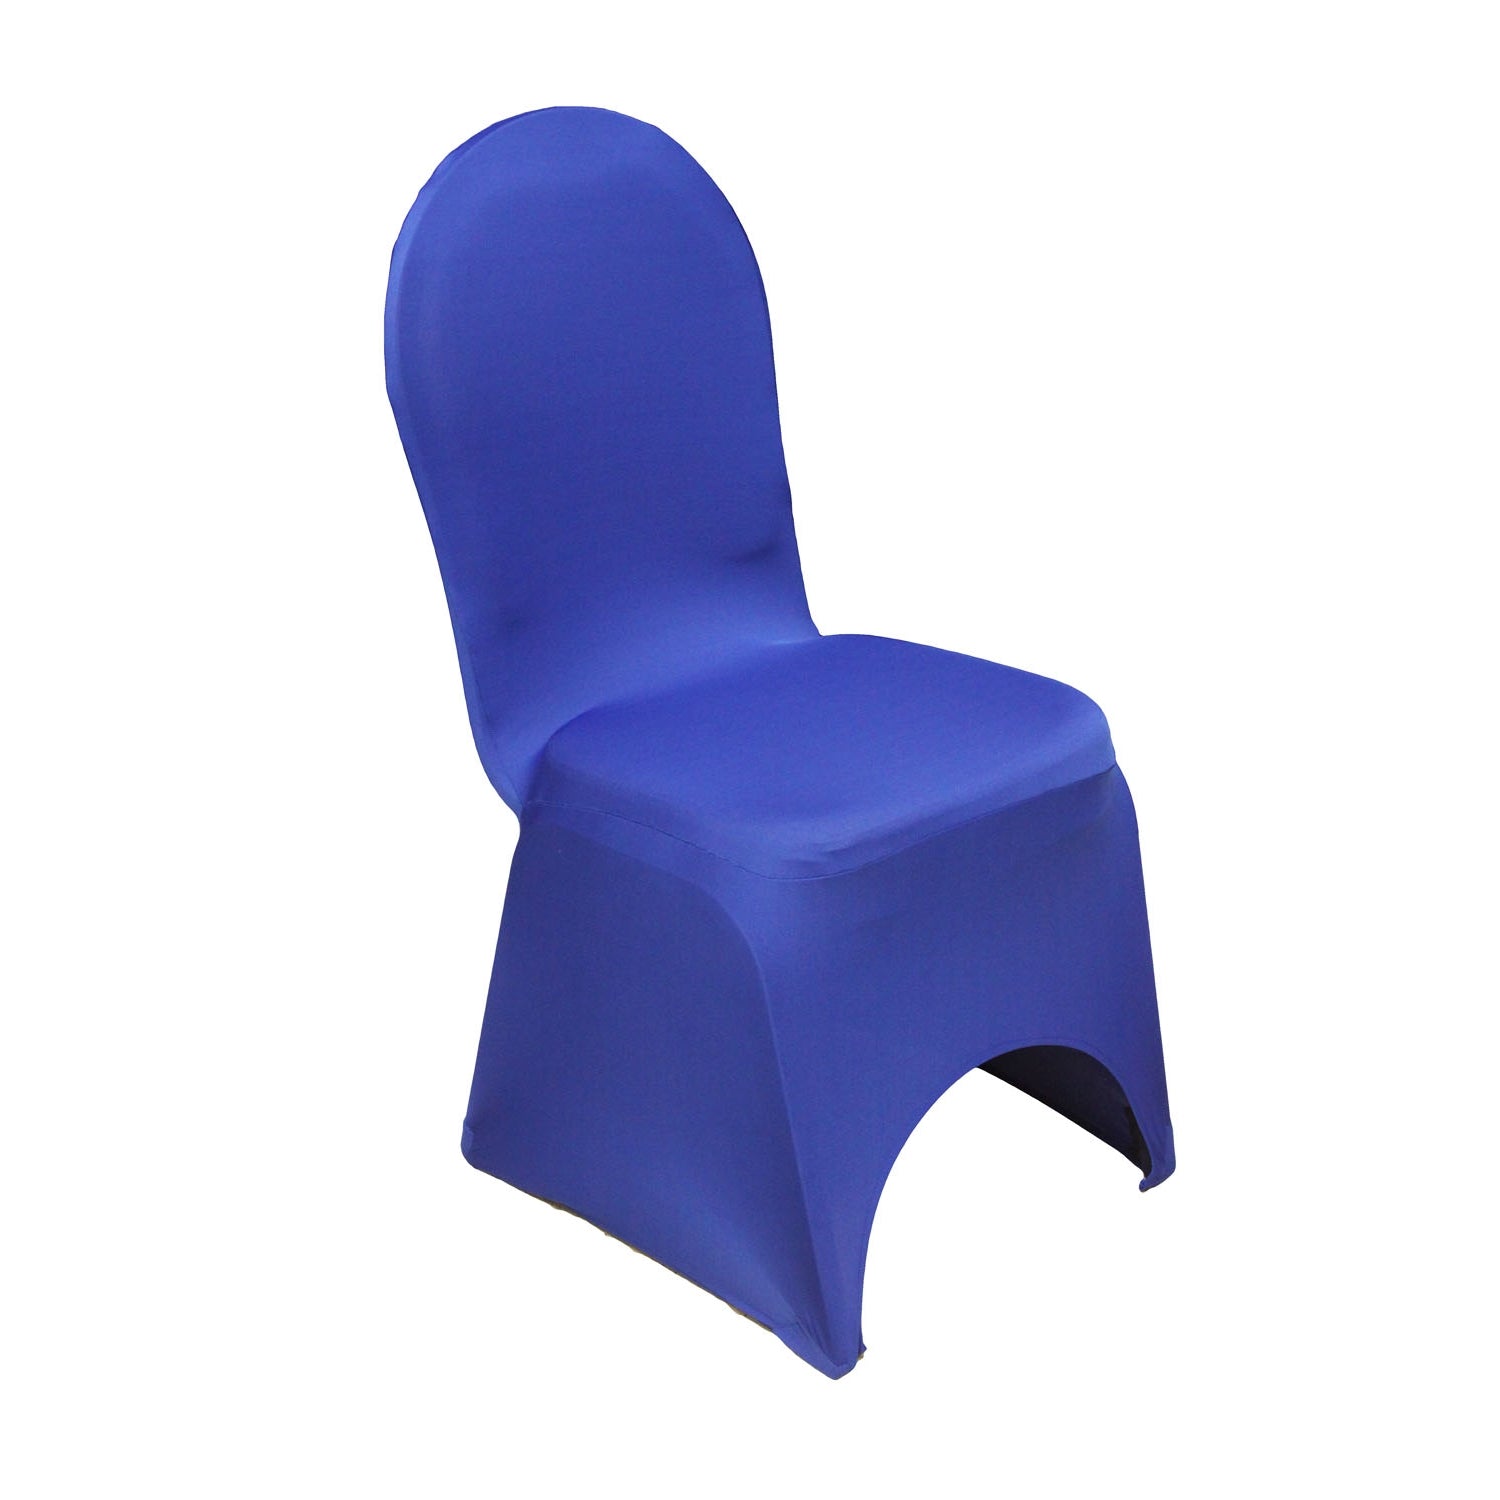 Spandex Banquet Chair Cover - Royal Blue